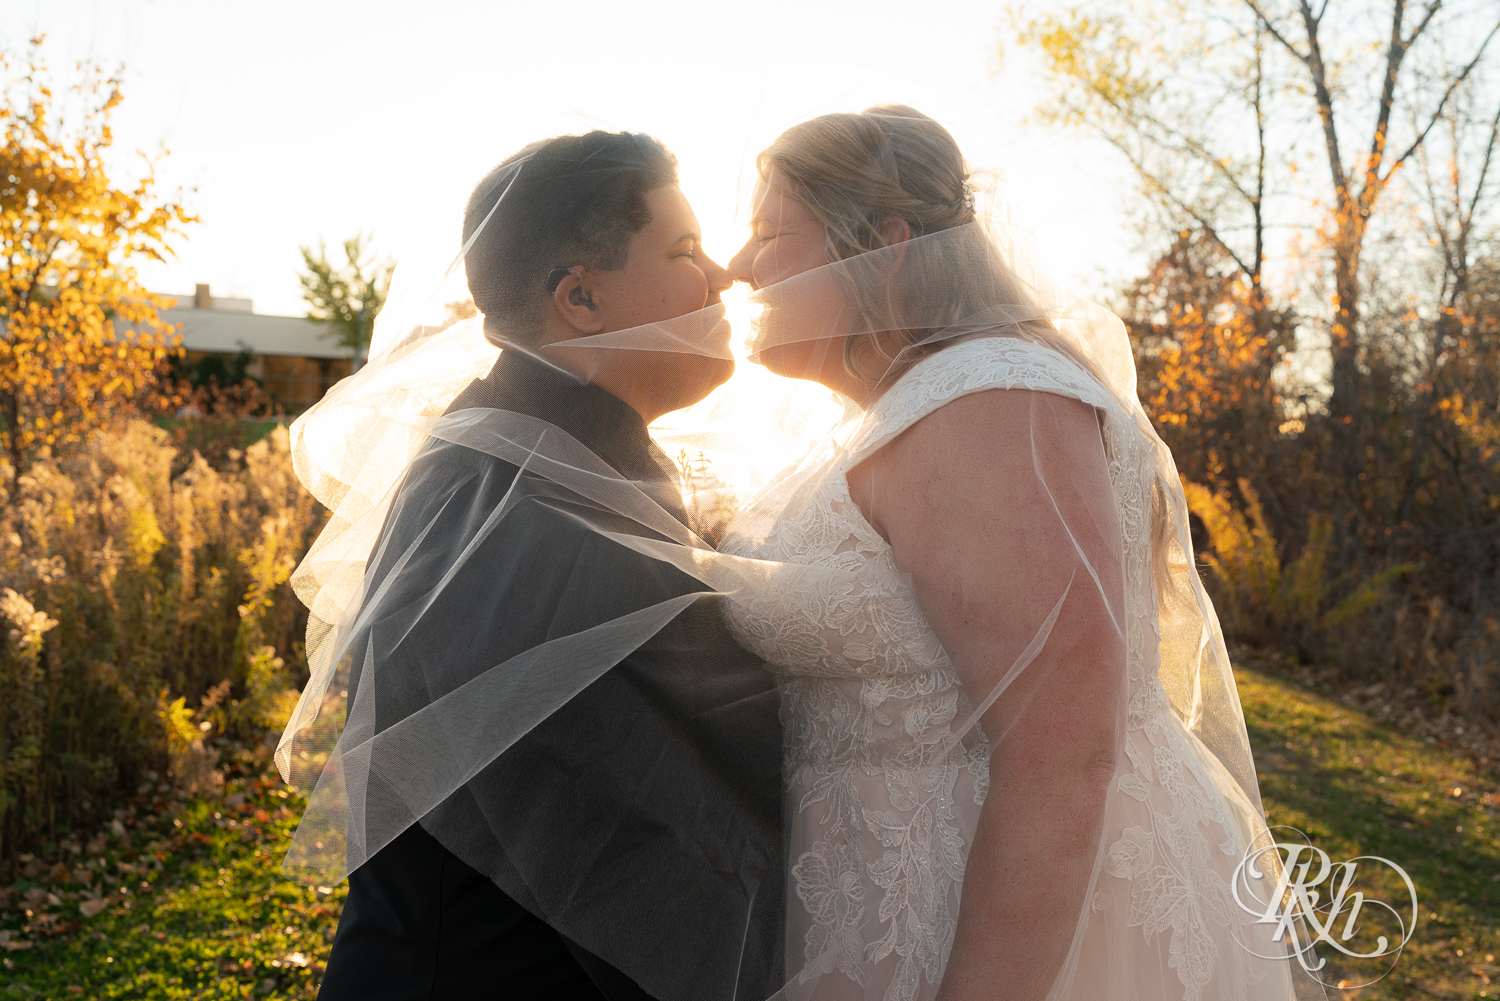 Lesbian brides under veil at sunset at Eagan Community Center in Eagan, Minnesota.